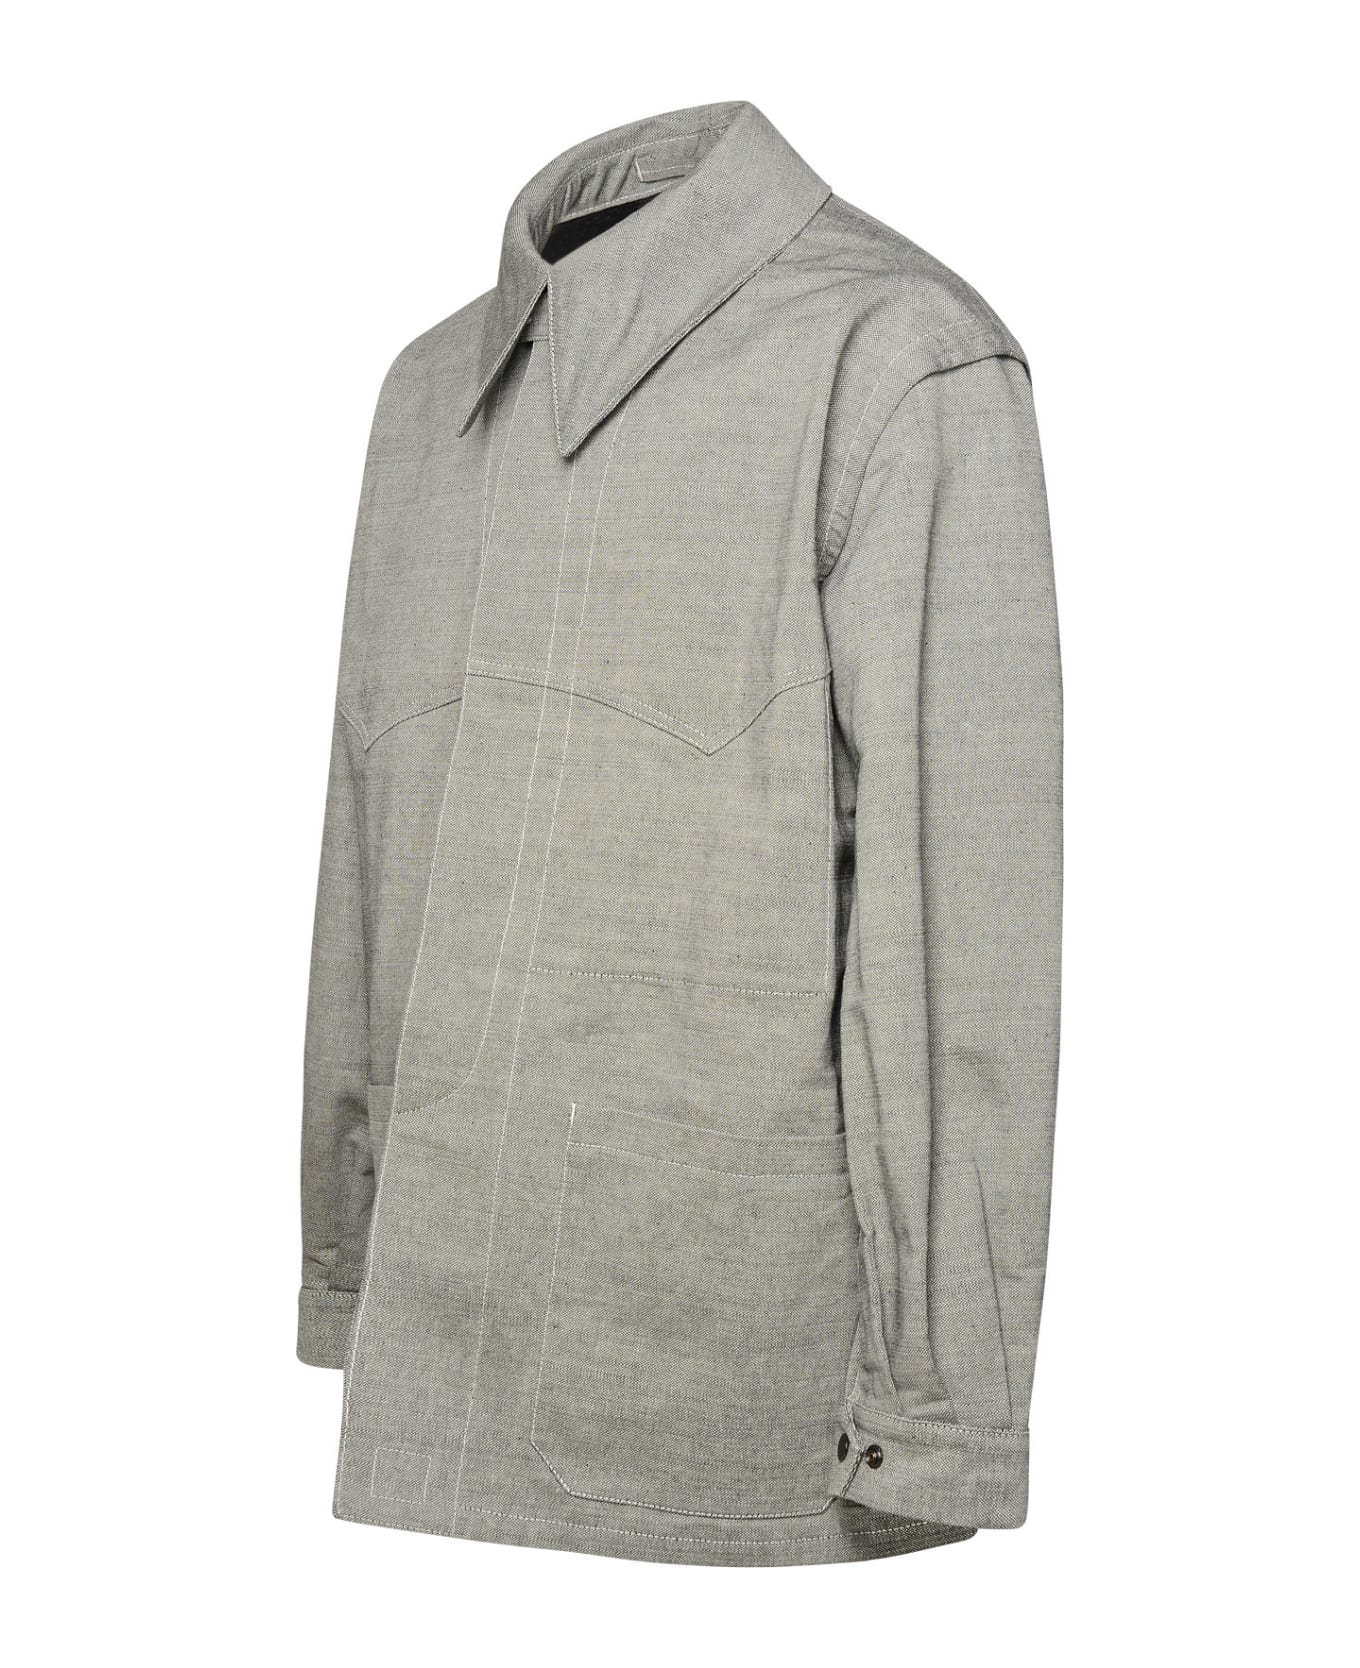 Maison Margiela Grey Cotton Jacket - Grey ジャケット